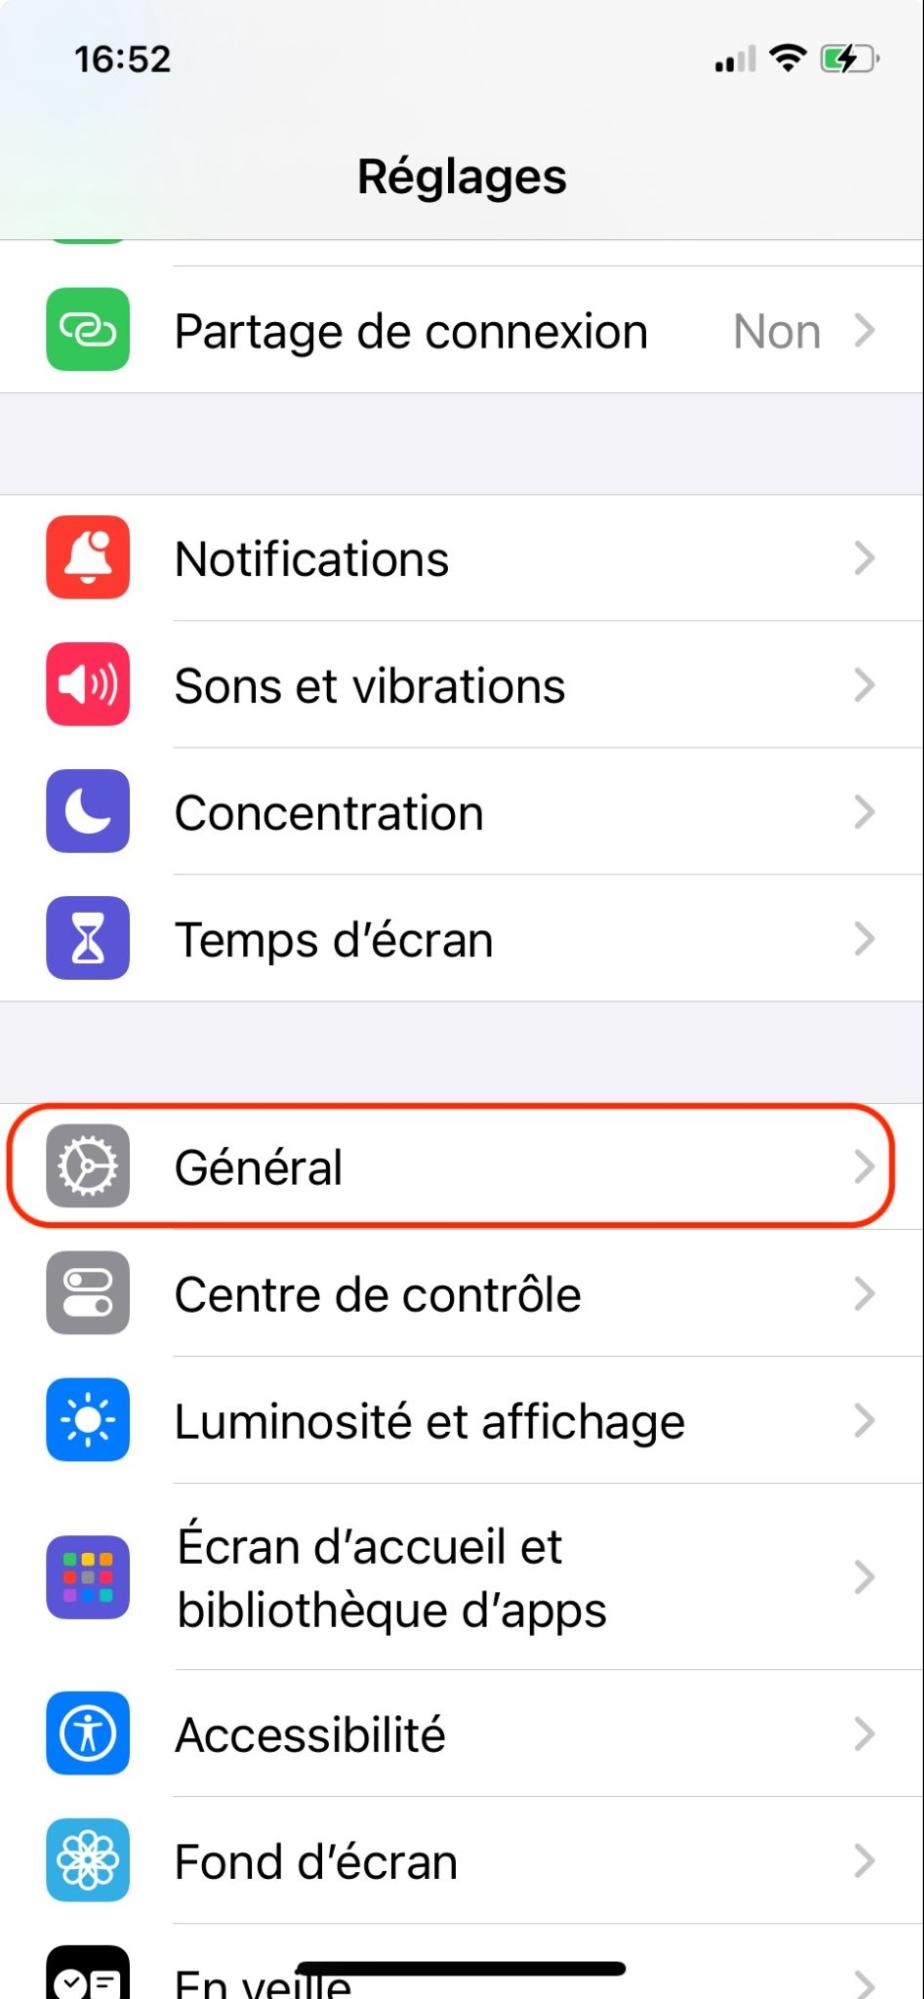 L'application Réglages sur l'iPhone affiche une liste d'options système. Sélectionnez Général pour réinitialiser votre appareil.